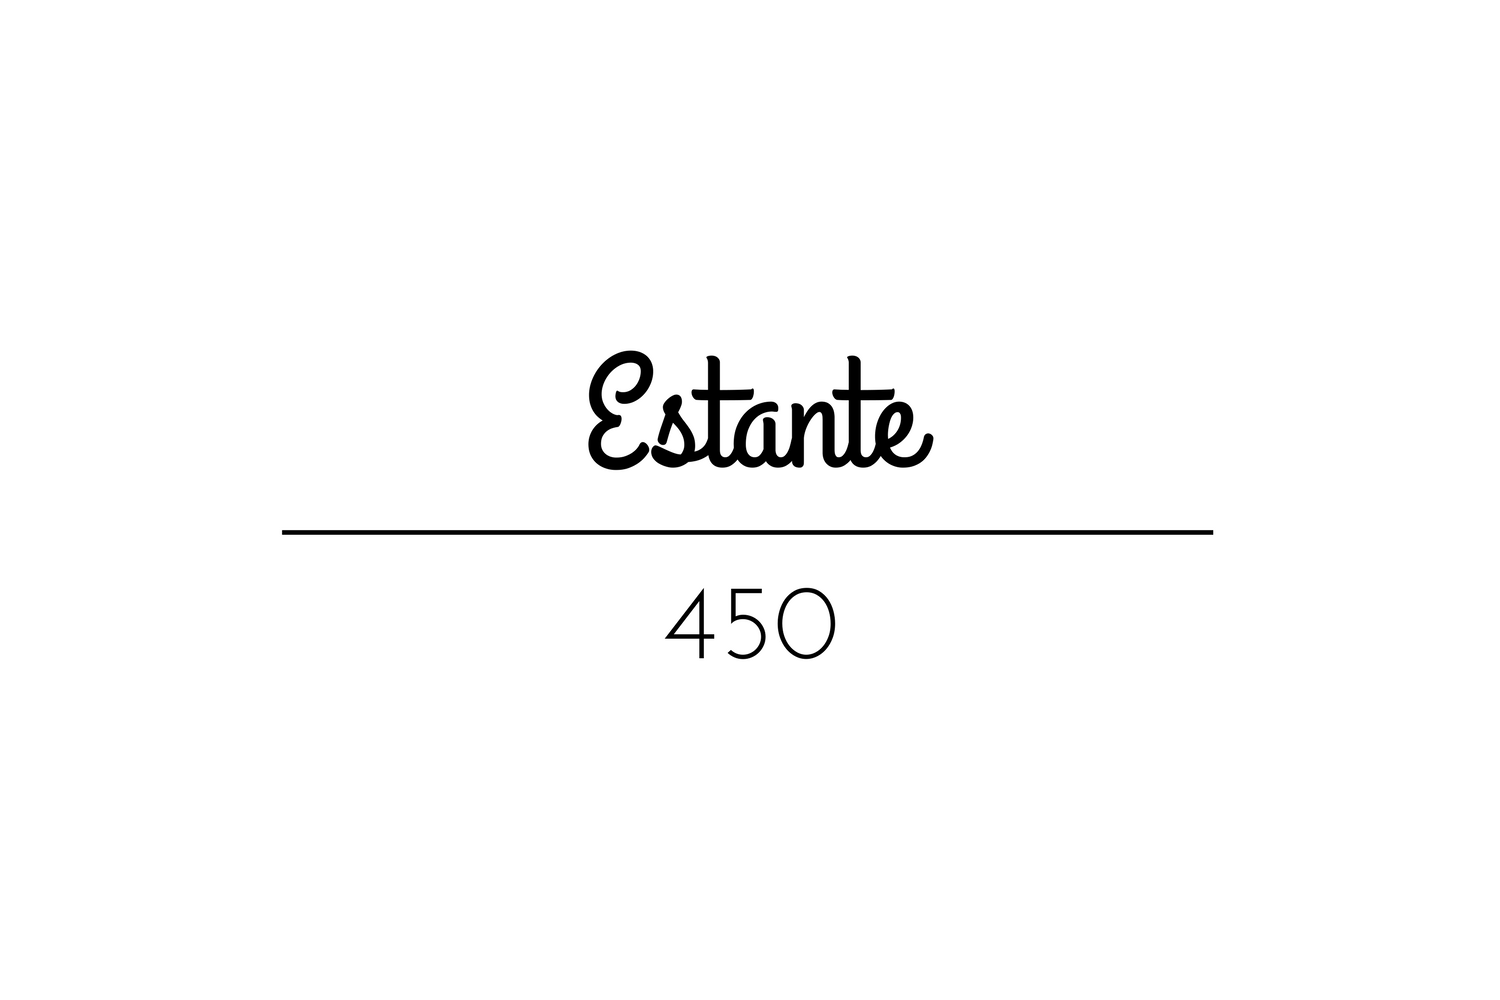 Estante 450